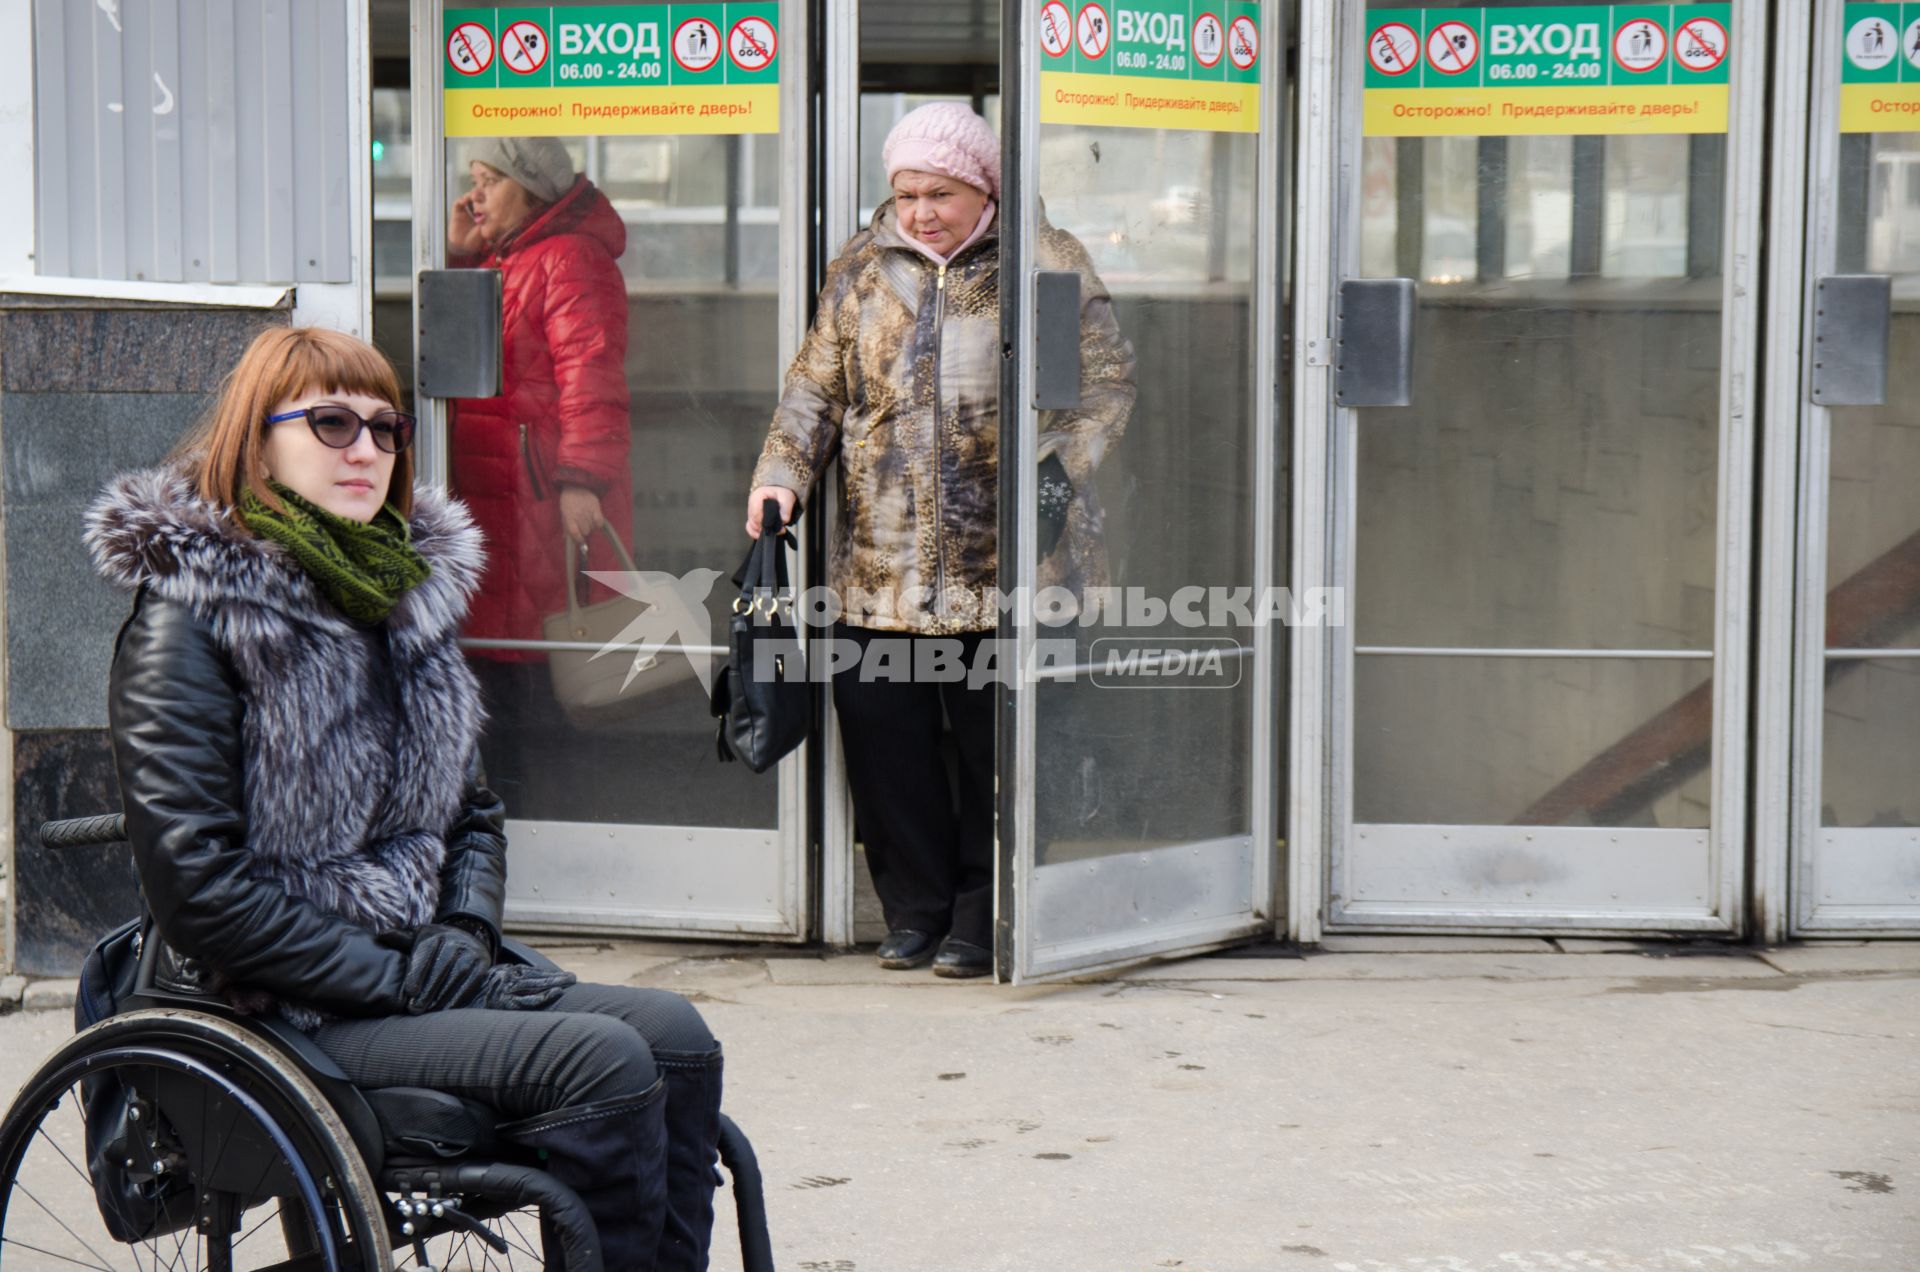 Самара. Активисты ОНФ (Общероссийский народный фронт) проверили доступность объектов и услуг для инвалидов.